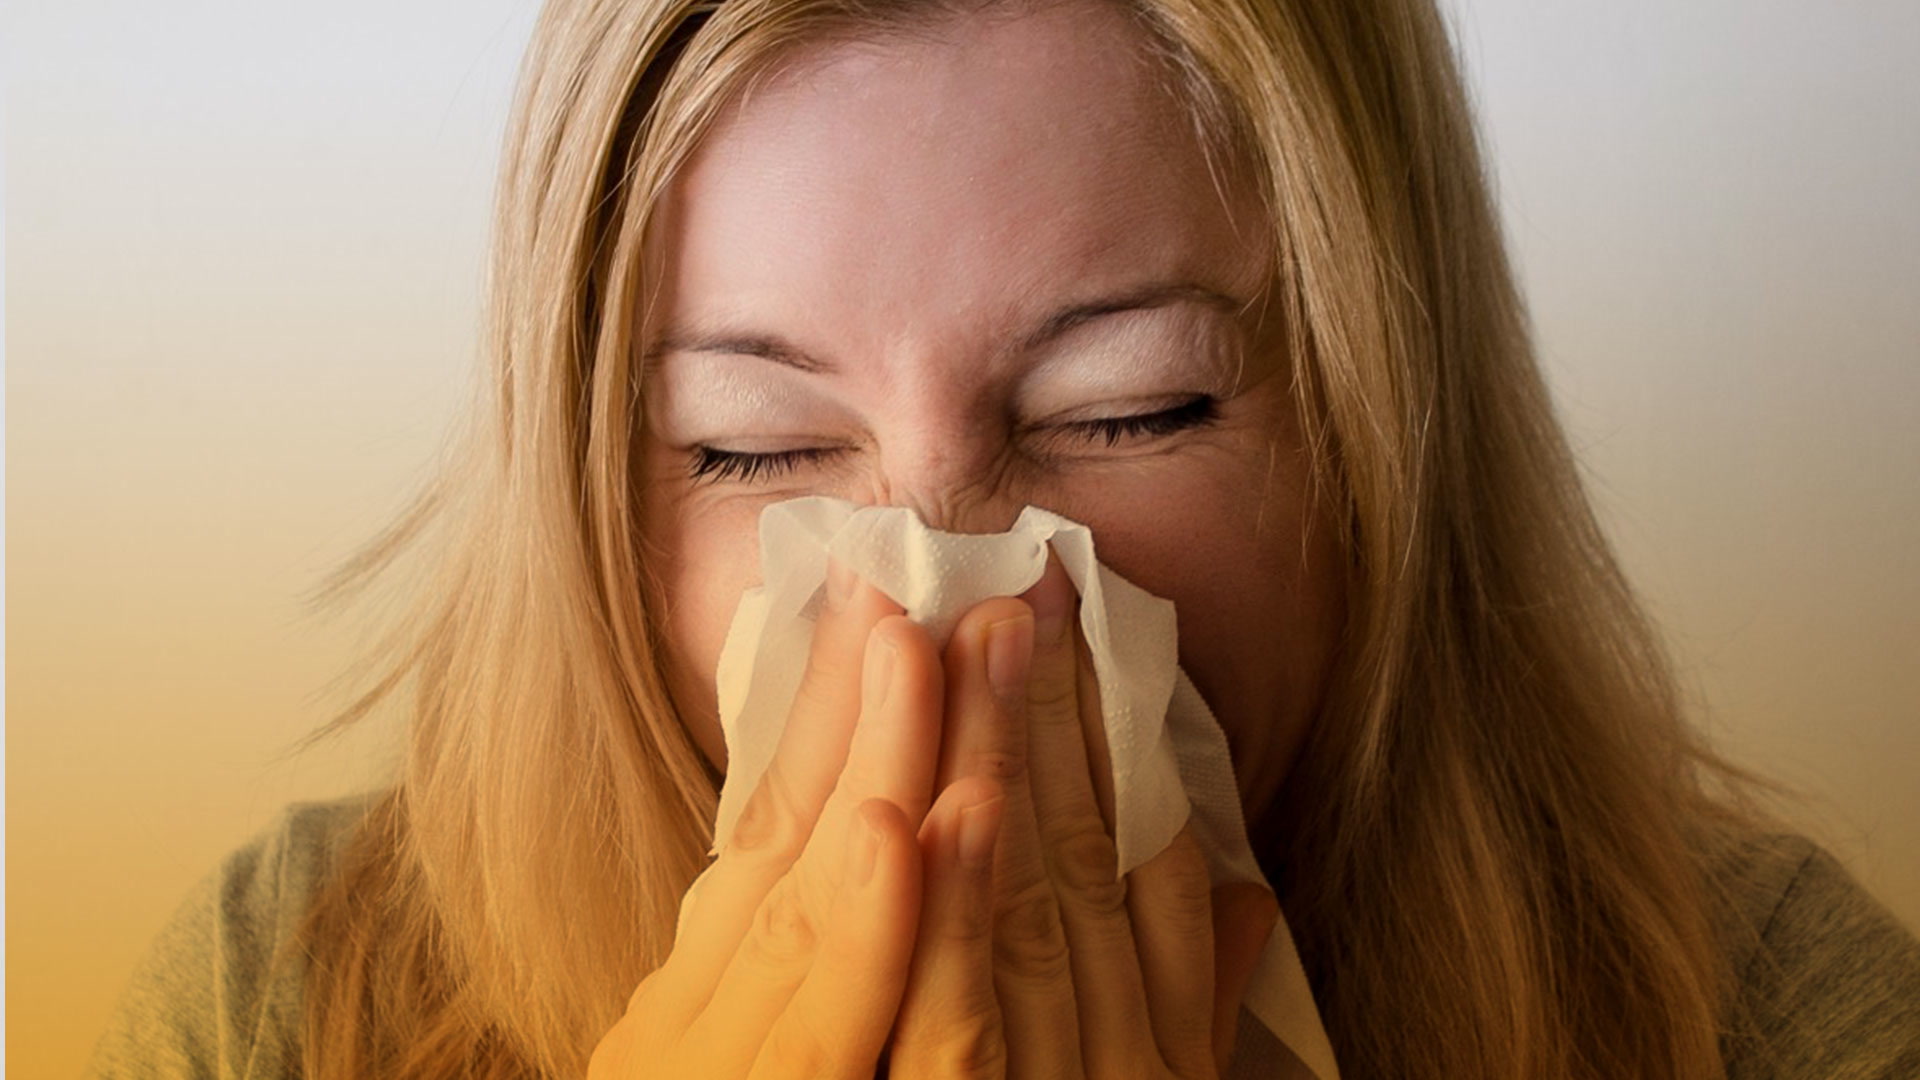 Manifestaciones alérgicas en nariz, oído y garganta